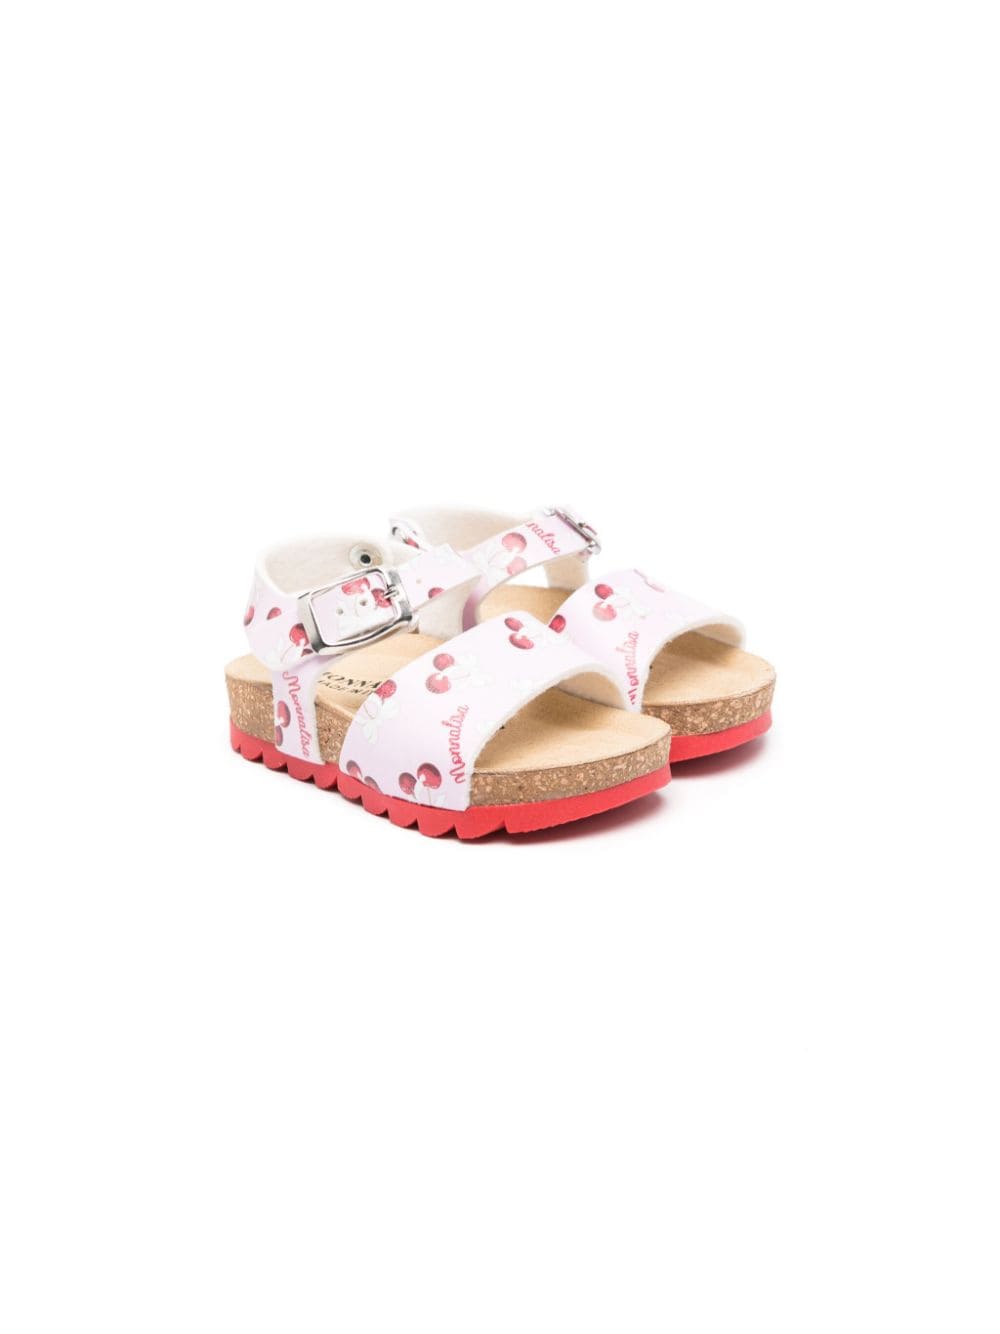 Monnalisa Babies' 露趾皮质凉鞋 In Pink